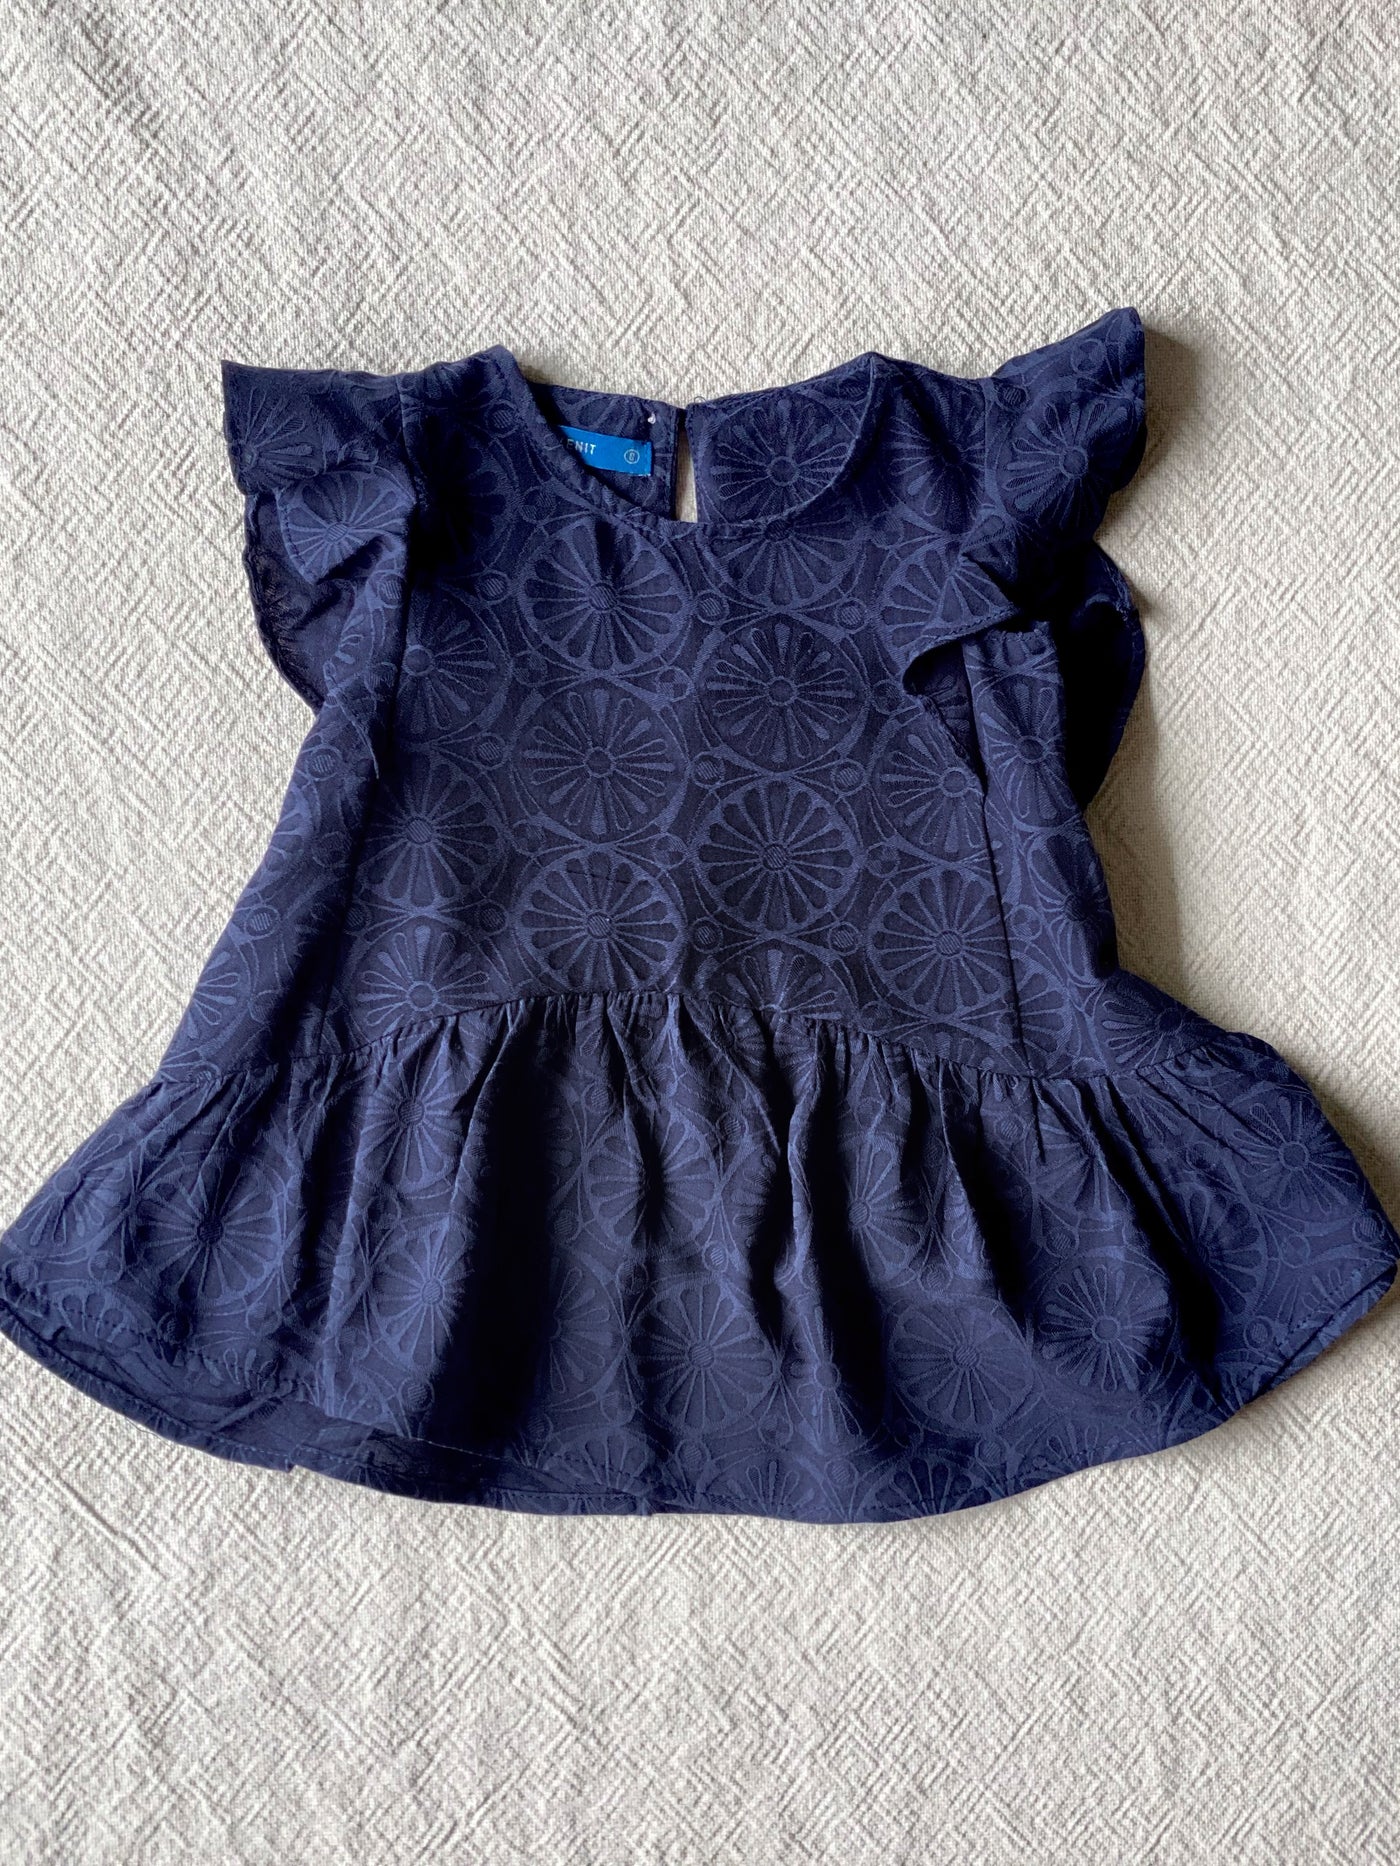 FIONA Baby's Ruffle Dress